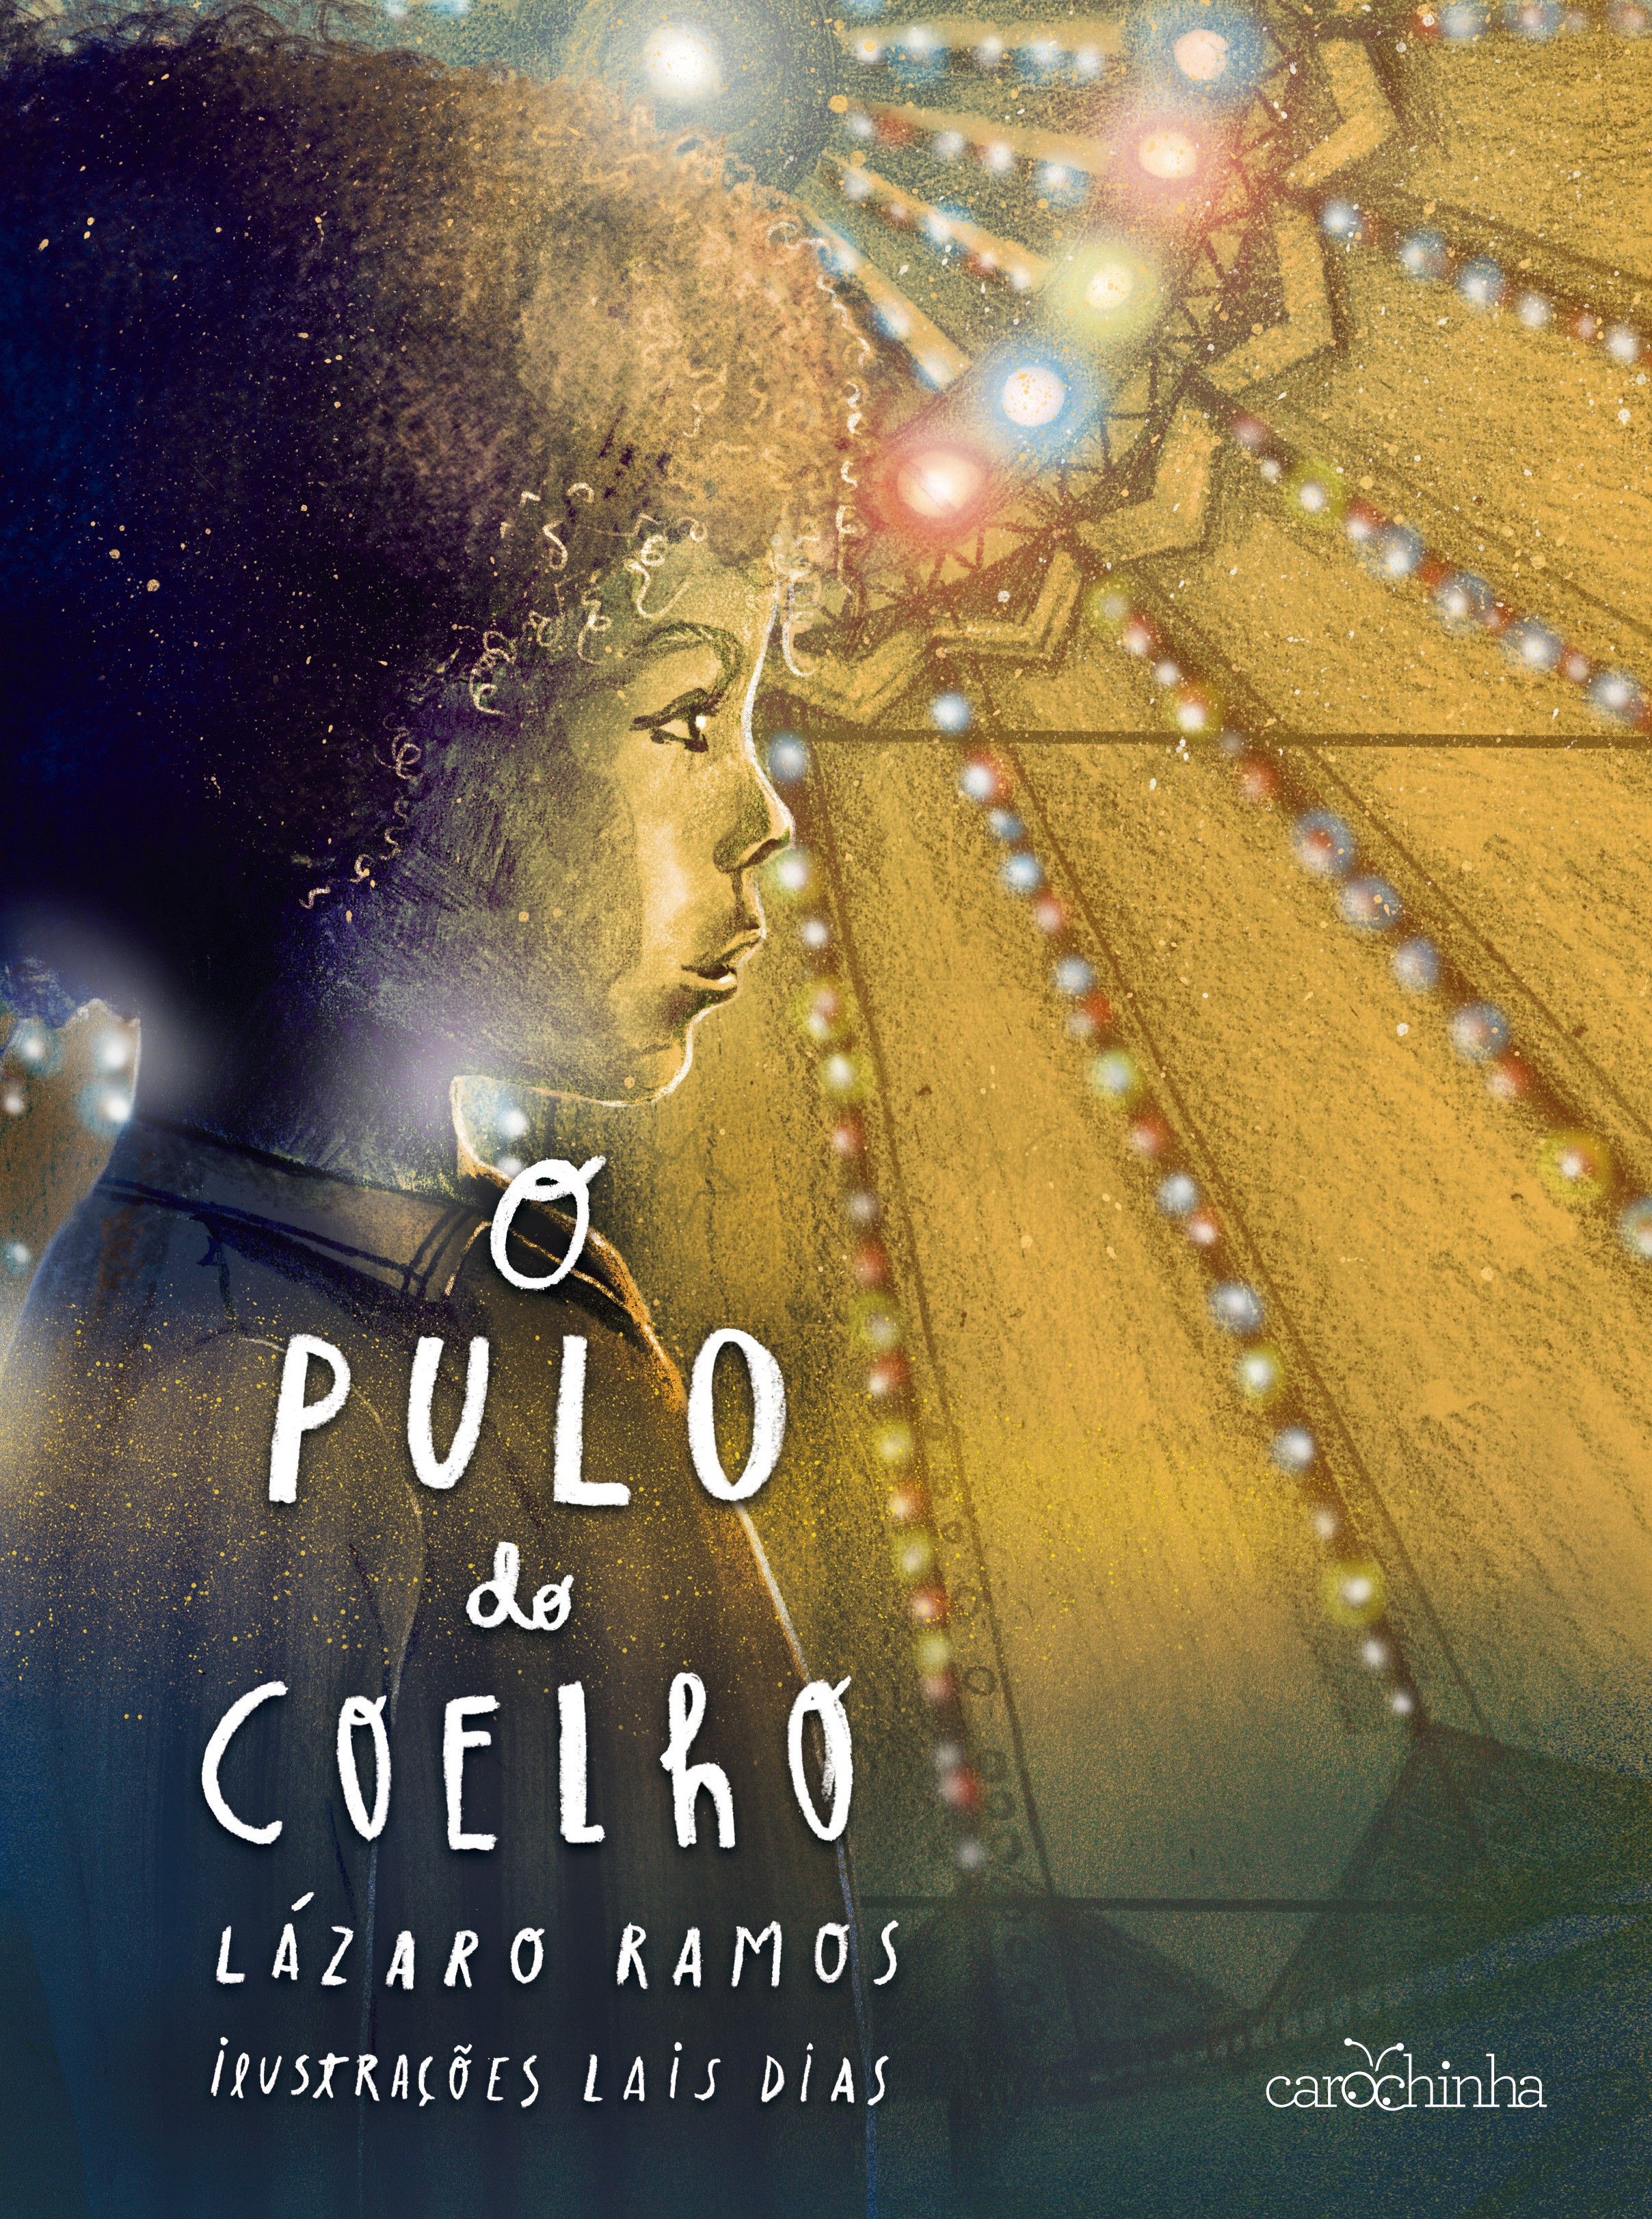 O Pulo do Coelho, livro de Lázaro Ramos (Foto: Divulgação)